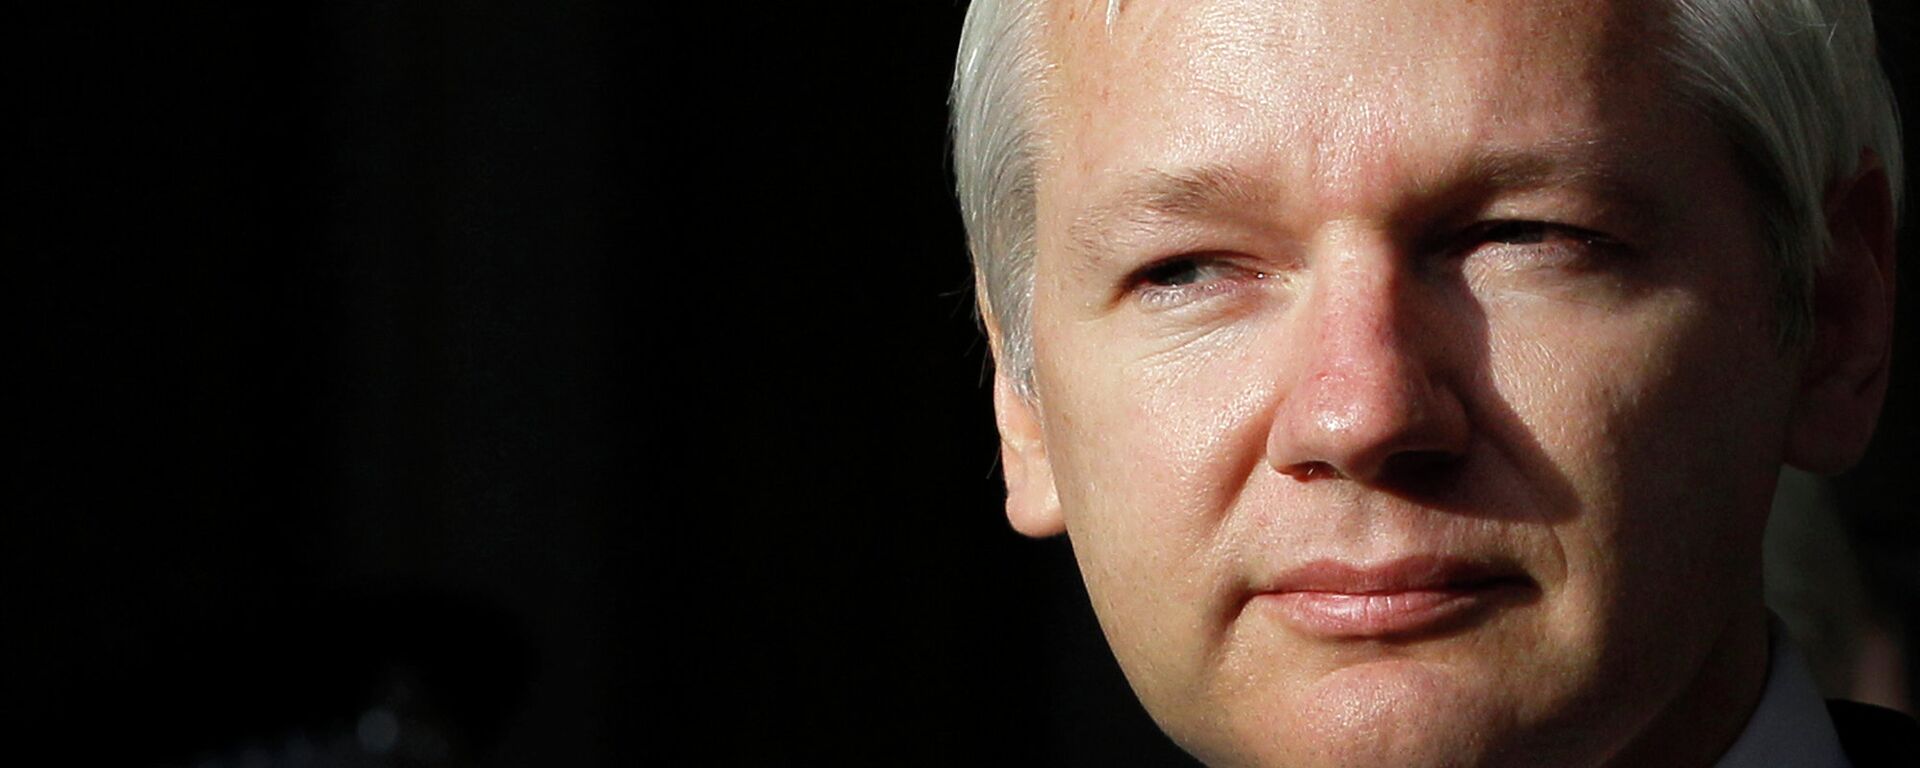 Julian Assange, fundador de WikiLeaks - Sputnik Mundo, 1920, 27.07.2021